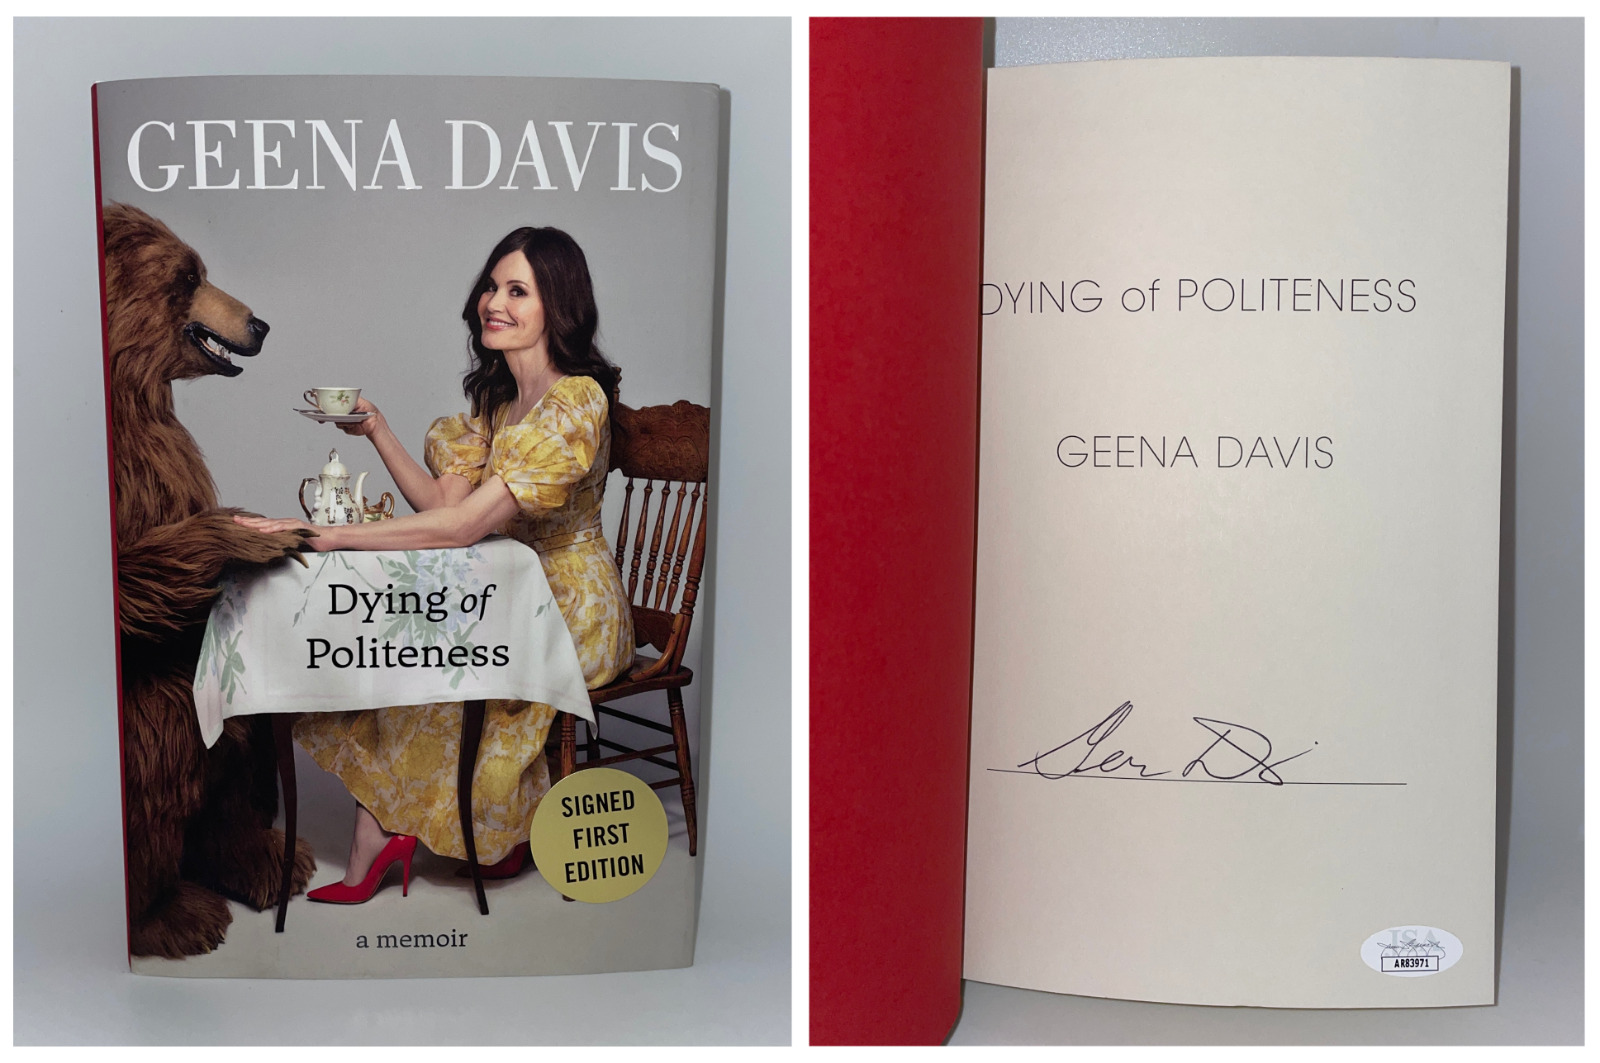 GEENA DAVIS Signed First Edition Book DYING OF POLITENESS Memoir JSA COA Cert